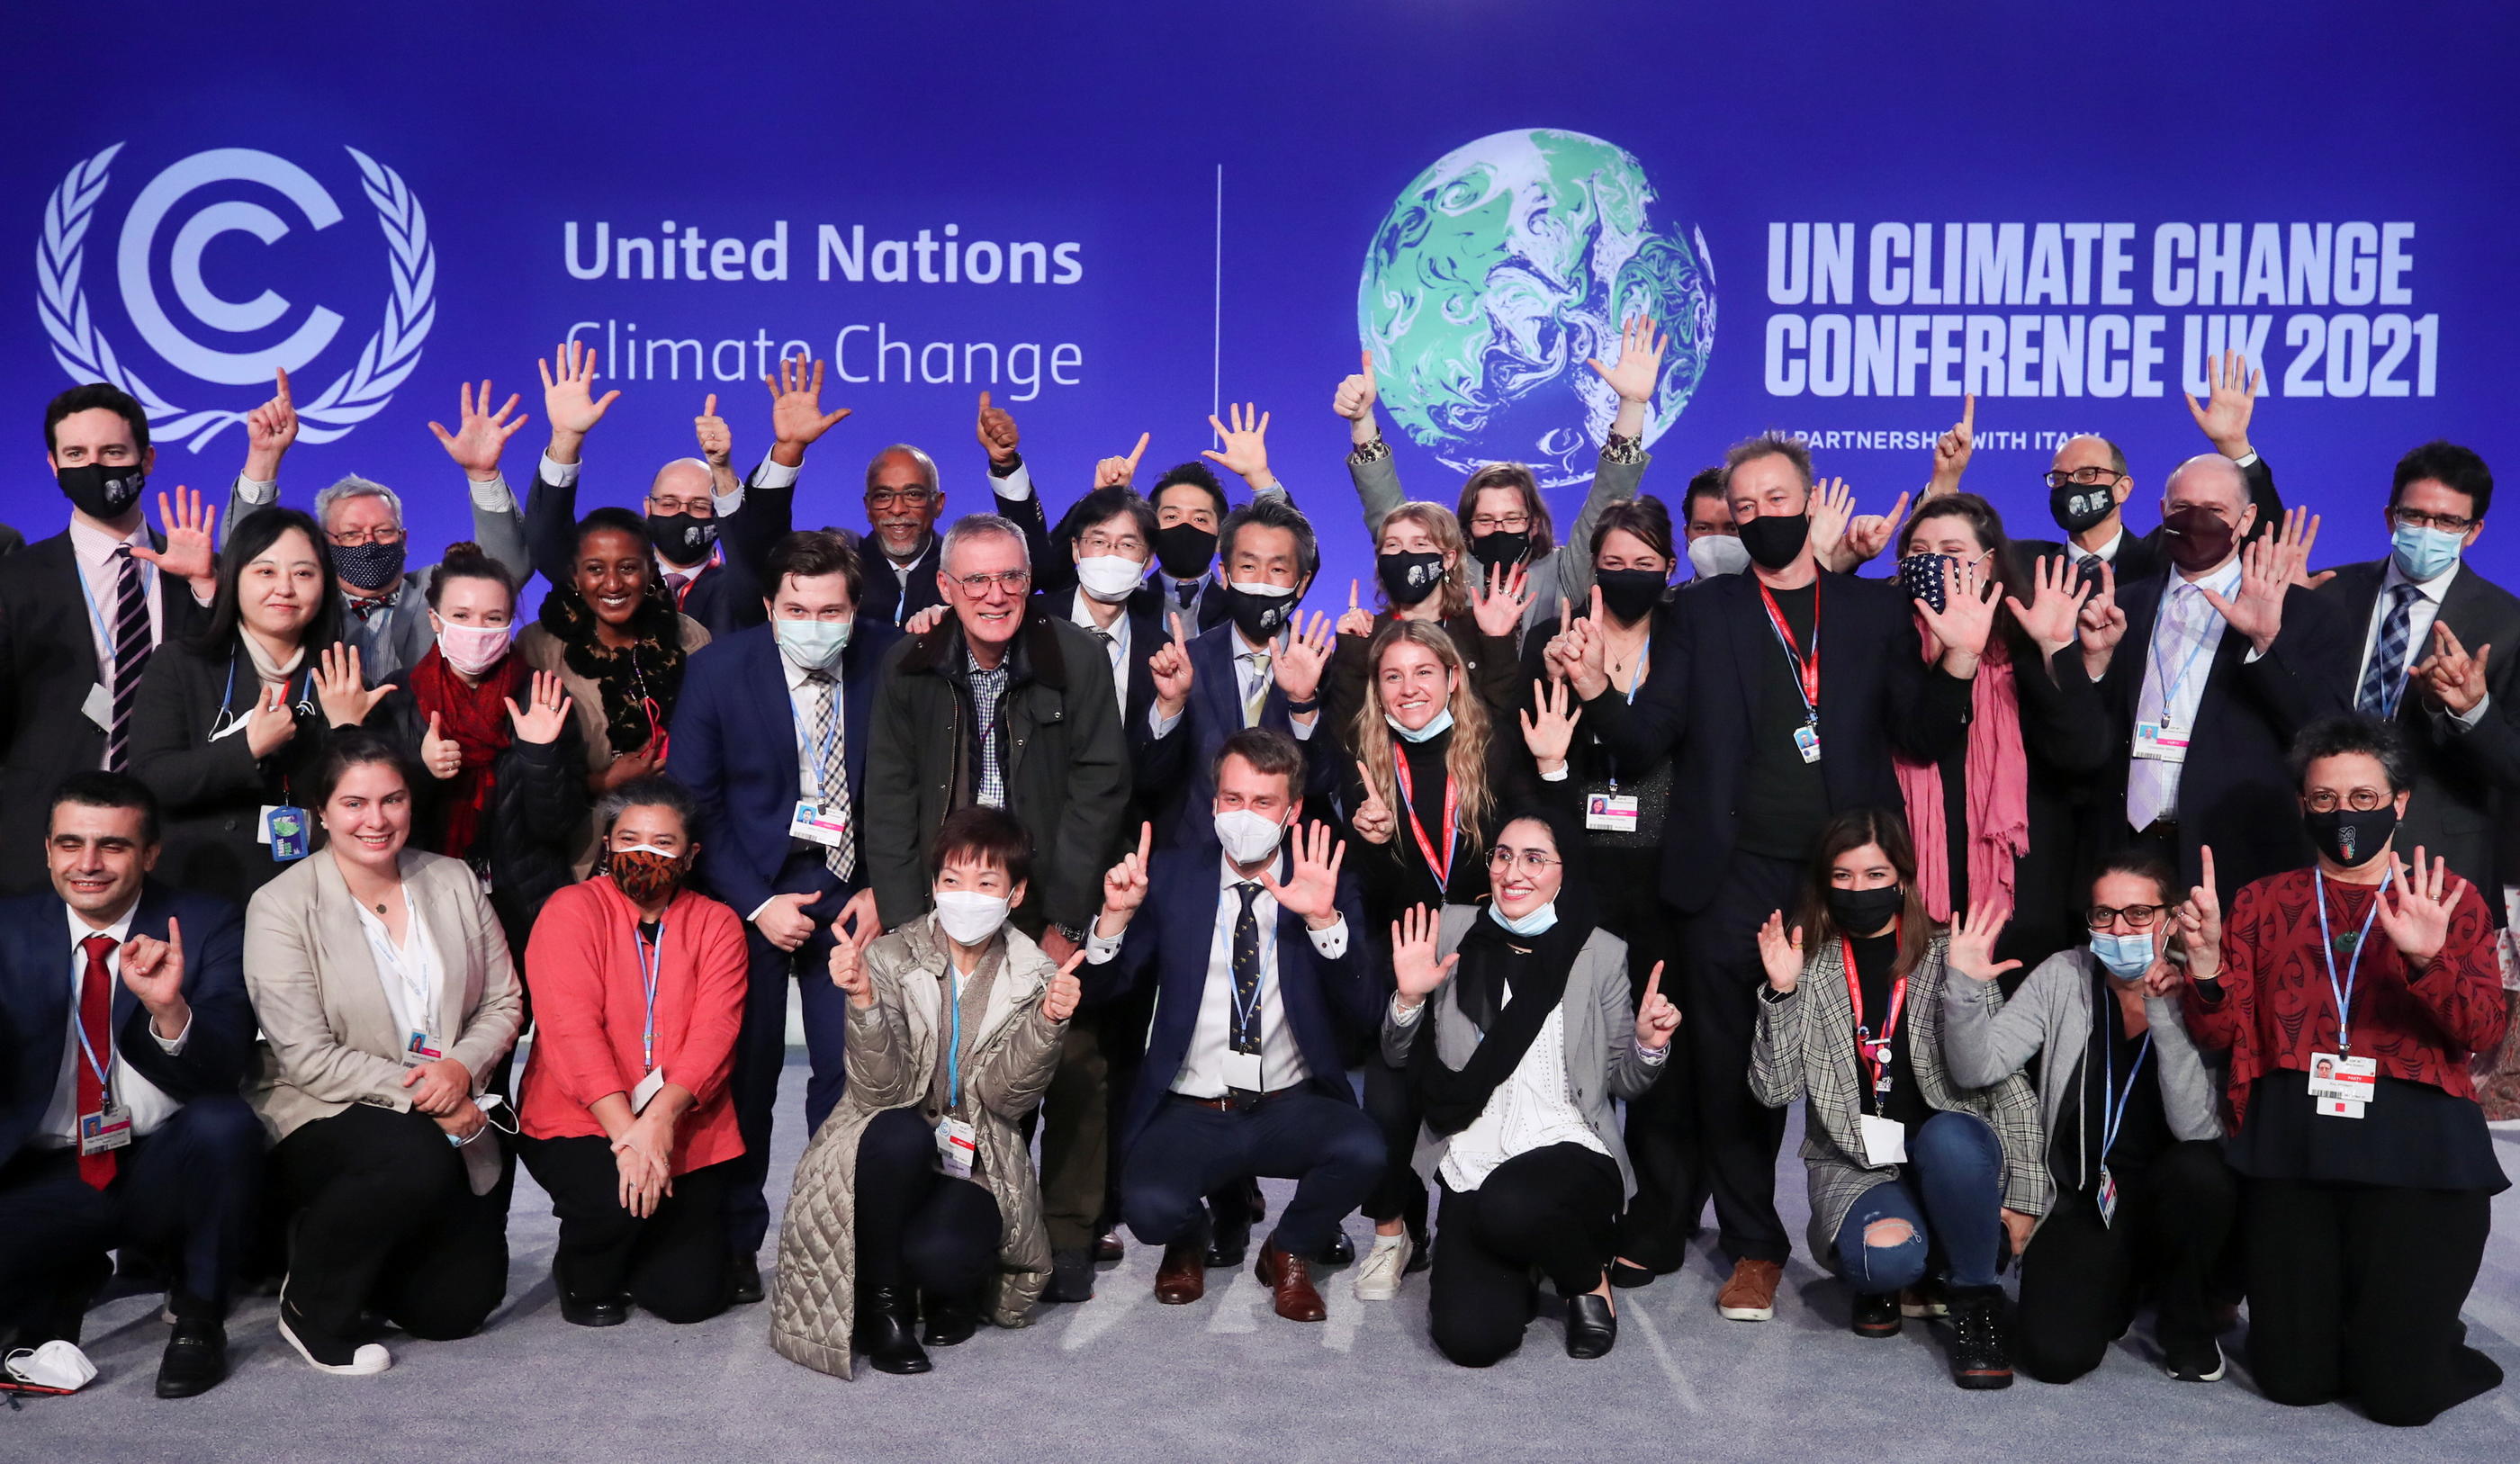 Des délégués posent pour une photo lors de la Conférence des Nations Unies sur les changements climatiques (COP26) à Glasgow, en Écosse, le 13 novembre 2021. REUTERS/Yves Herman